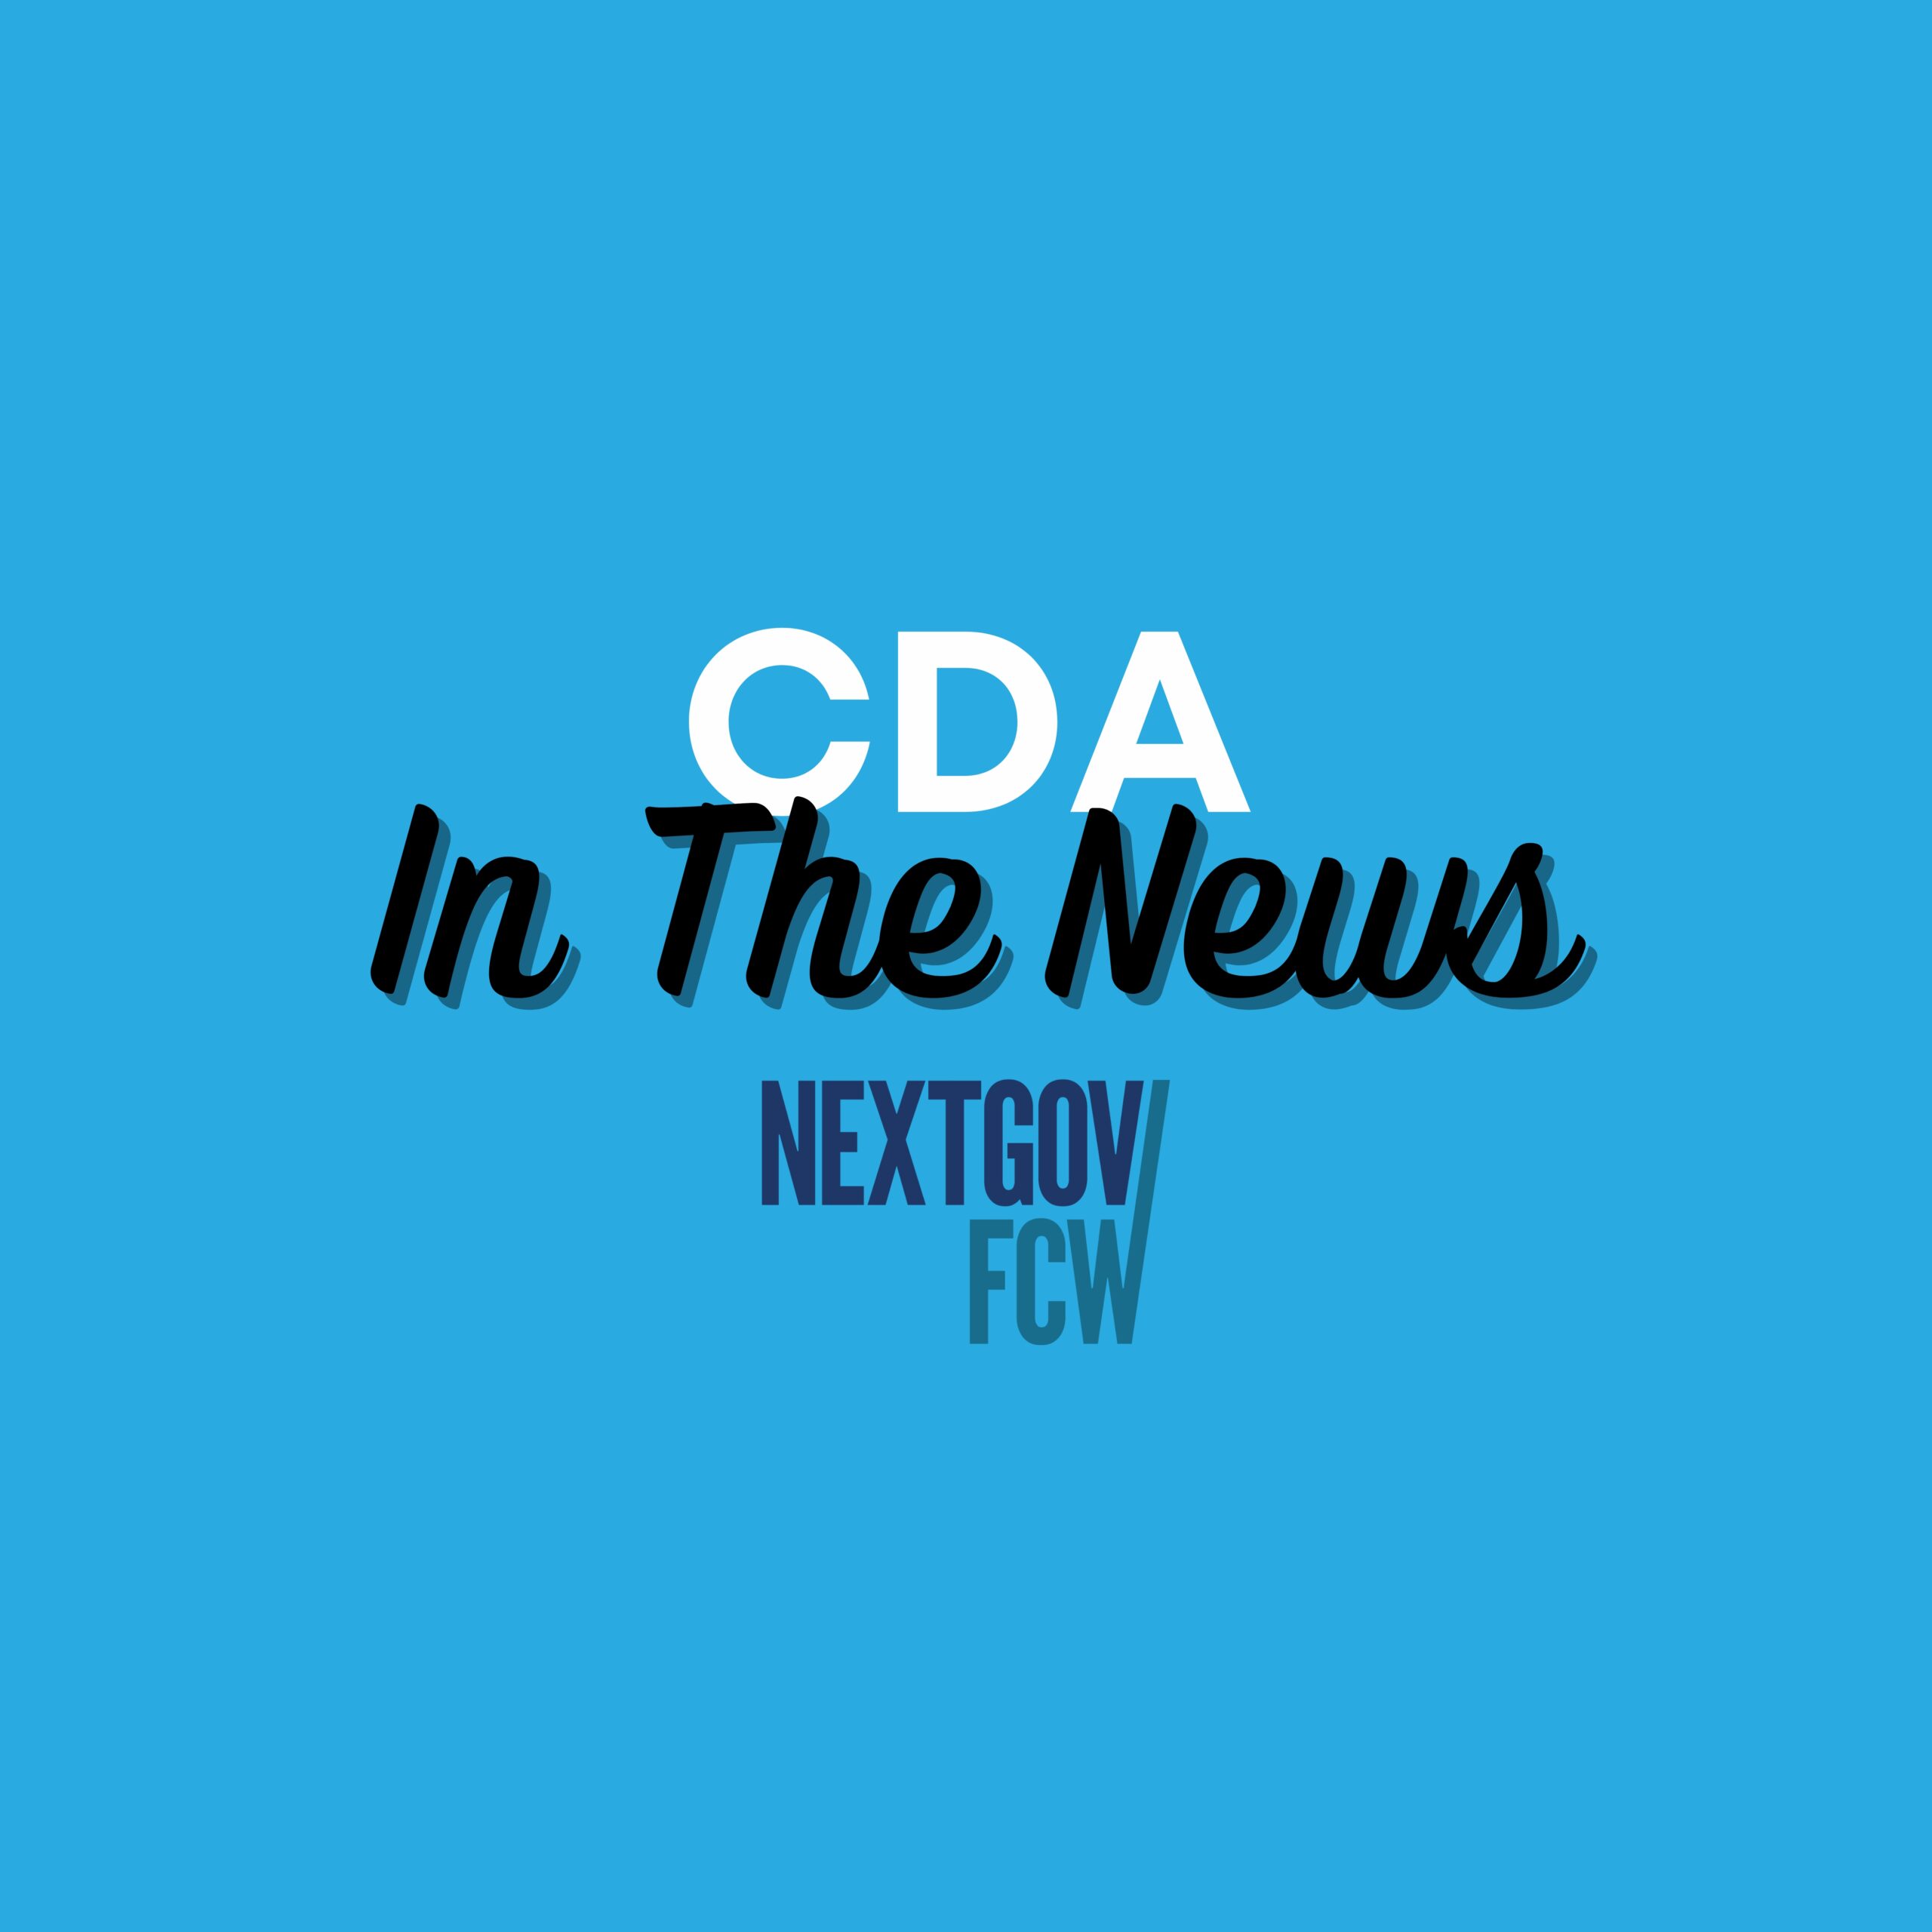 CDA Lisa Ellman Featured in NextGov